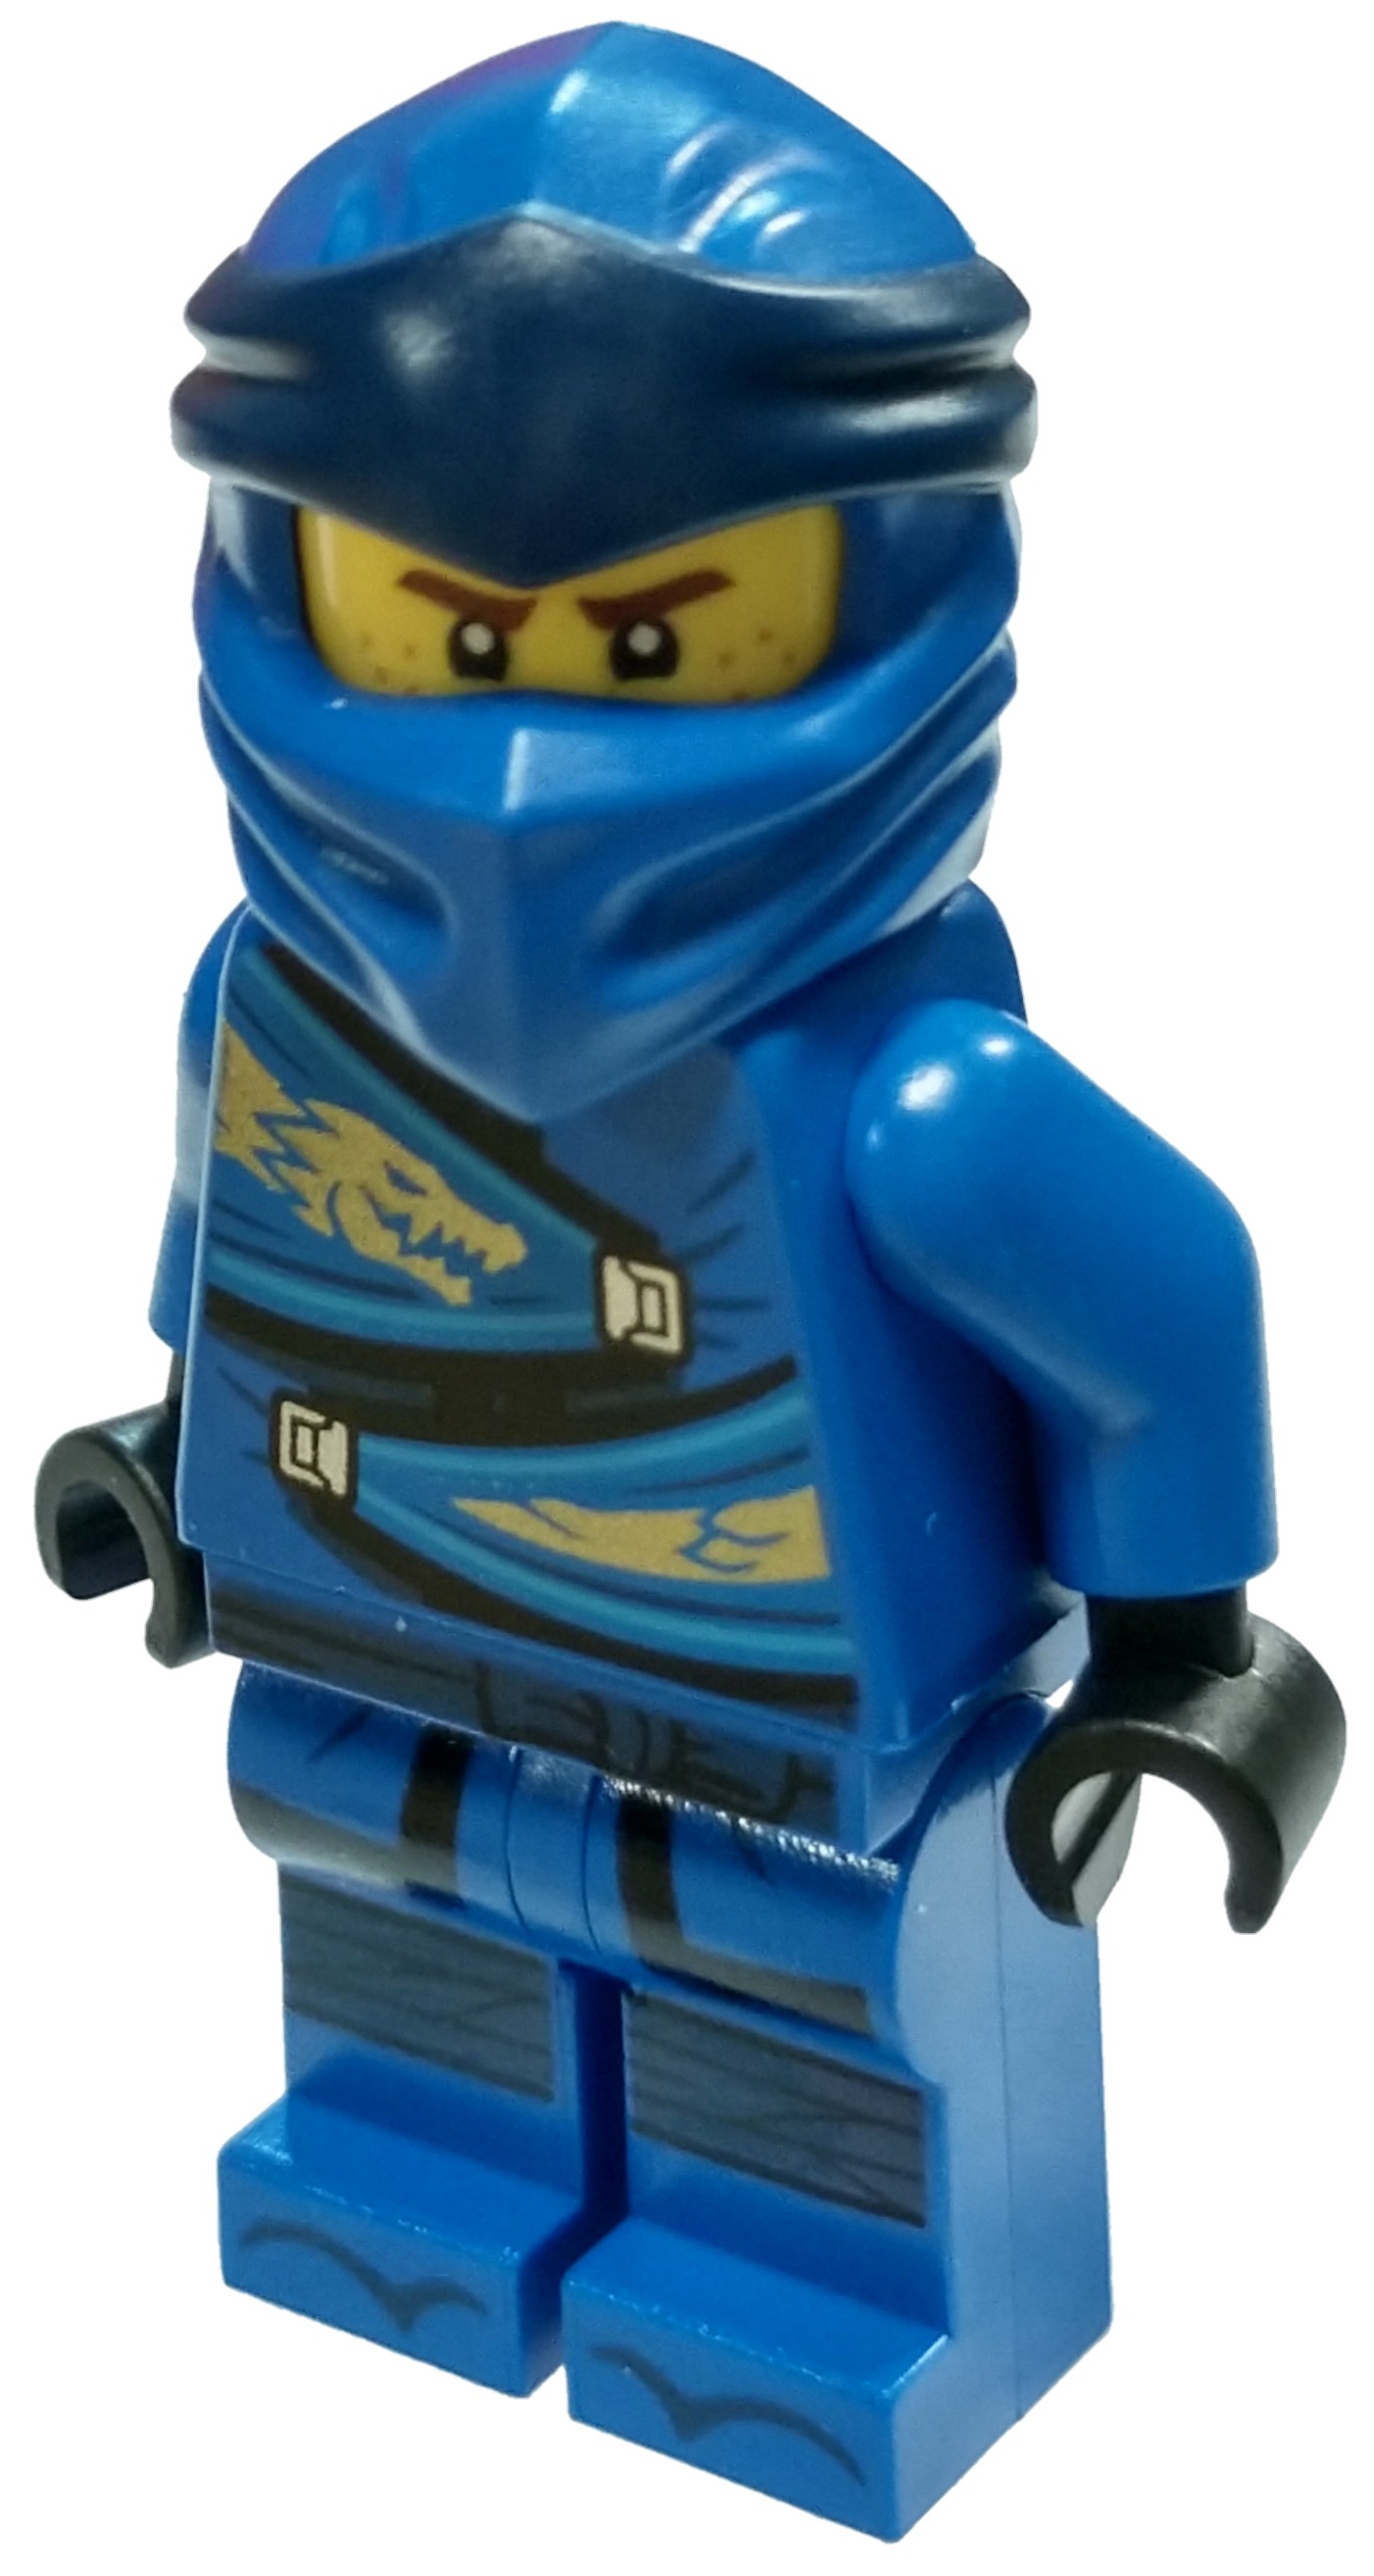 LEGO Ninjago Legacy Jay Minifigure [Loose] | eBay